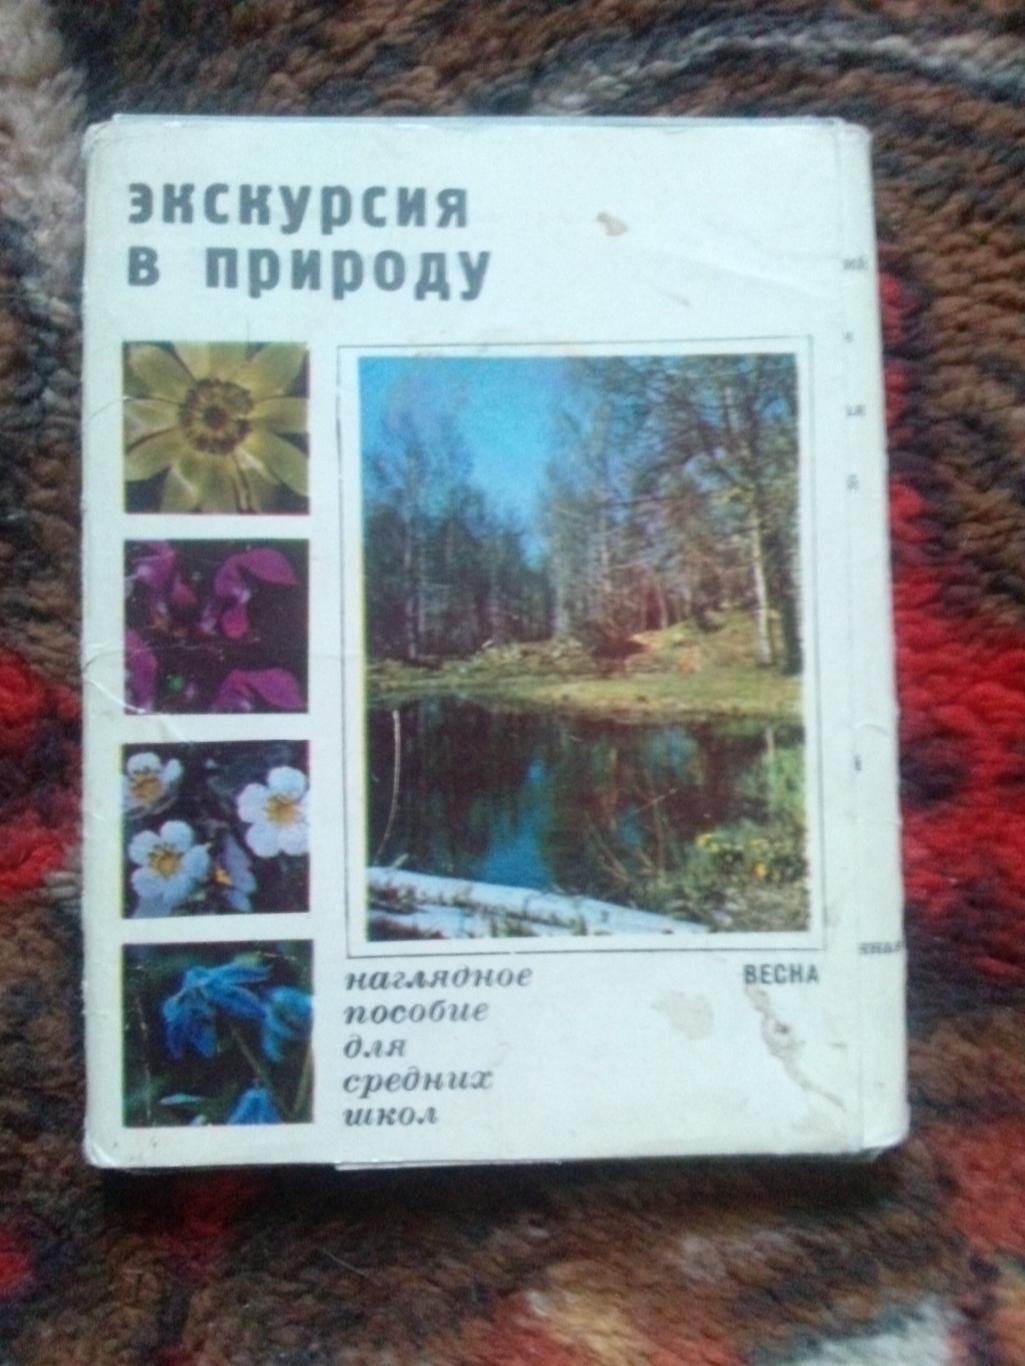 Экскурсия в природу 1972 г. полный набор - 25 открыток (растения флора цветы)